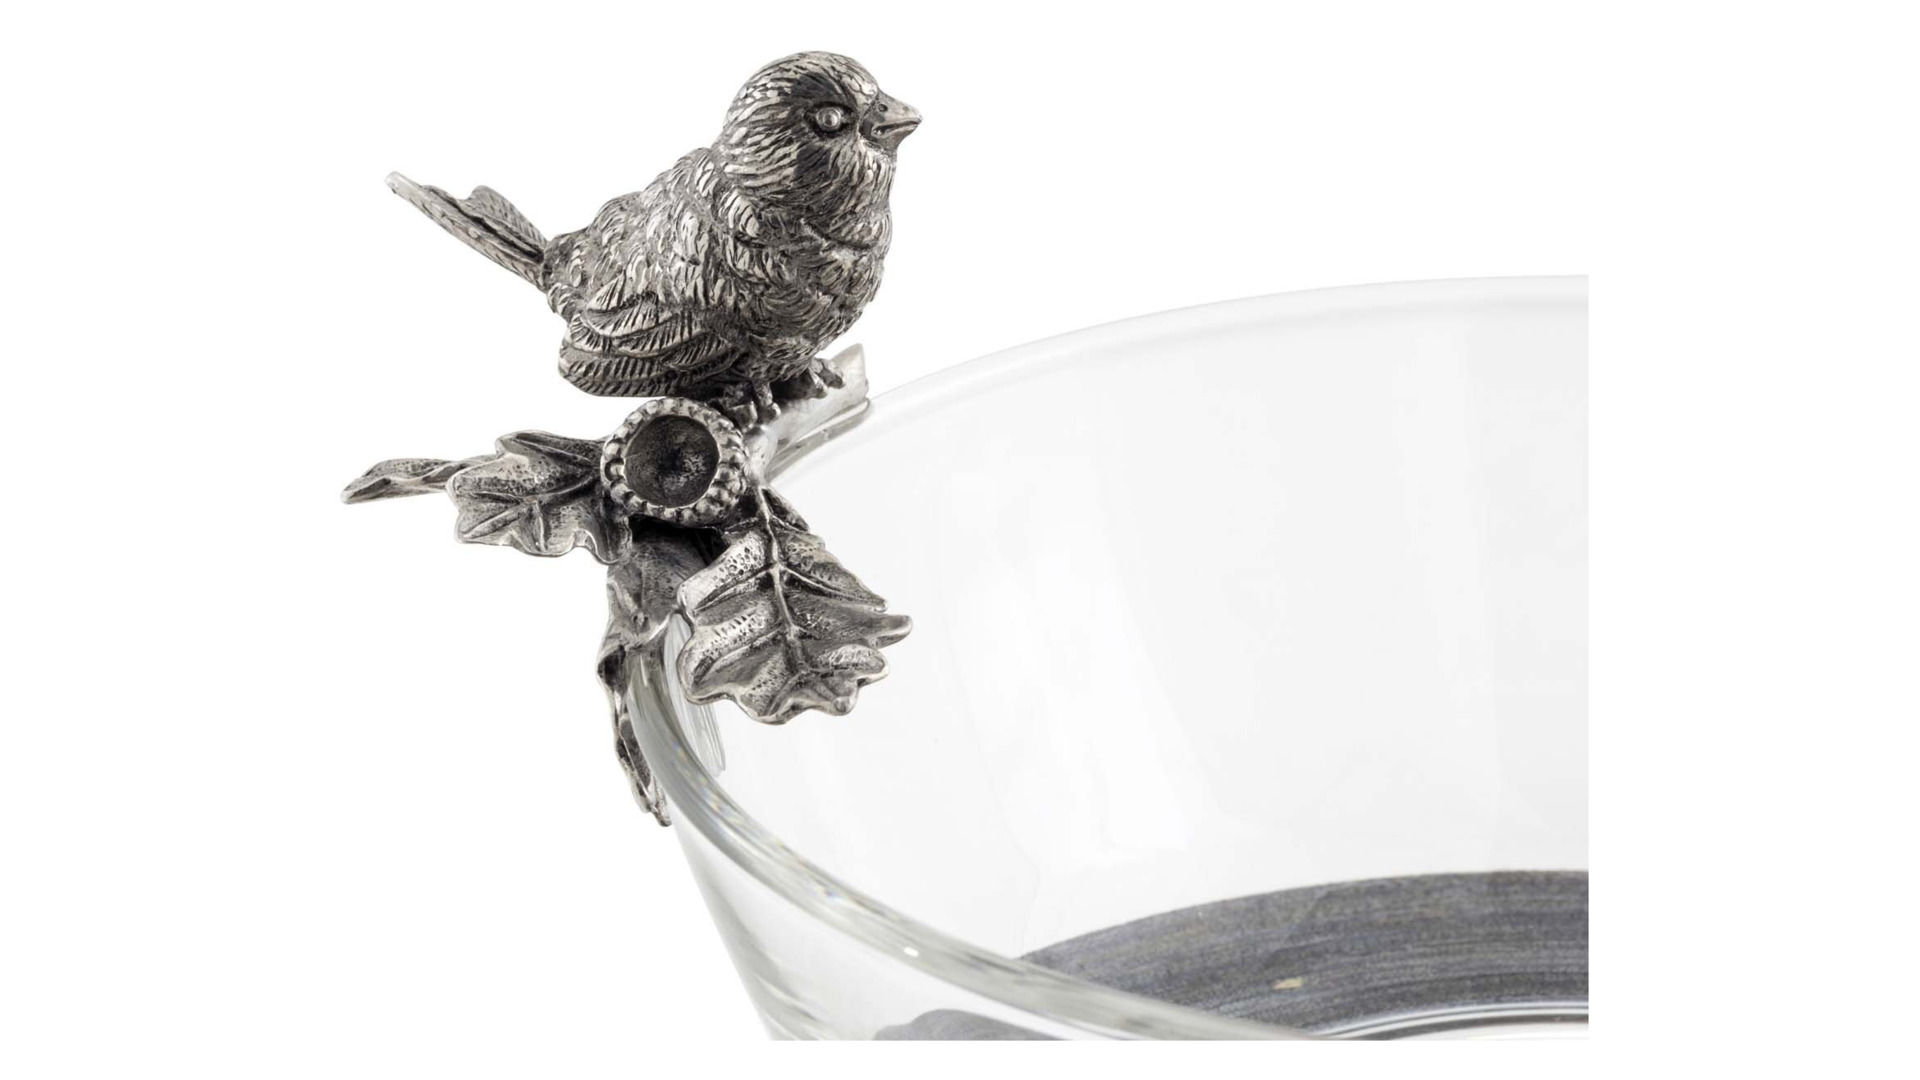 Чаша для орешков Vagabond House Птичья трельПтичка на ветке 15,5 см, стекло